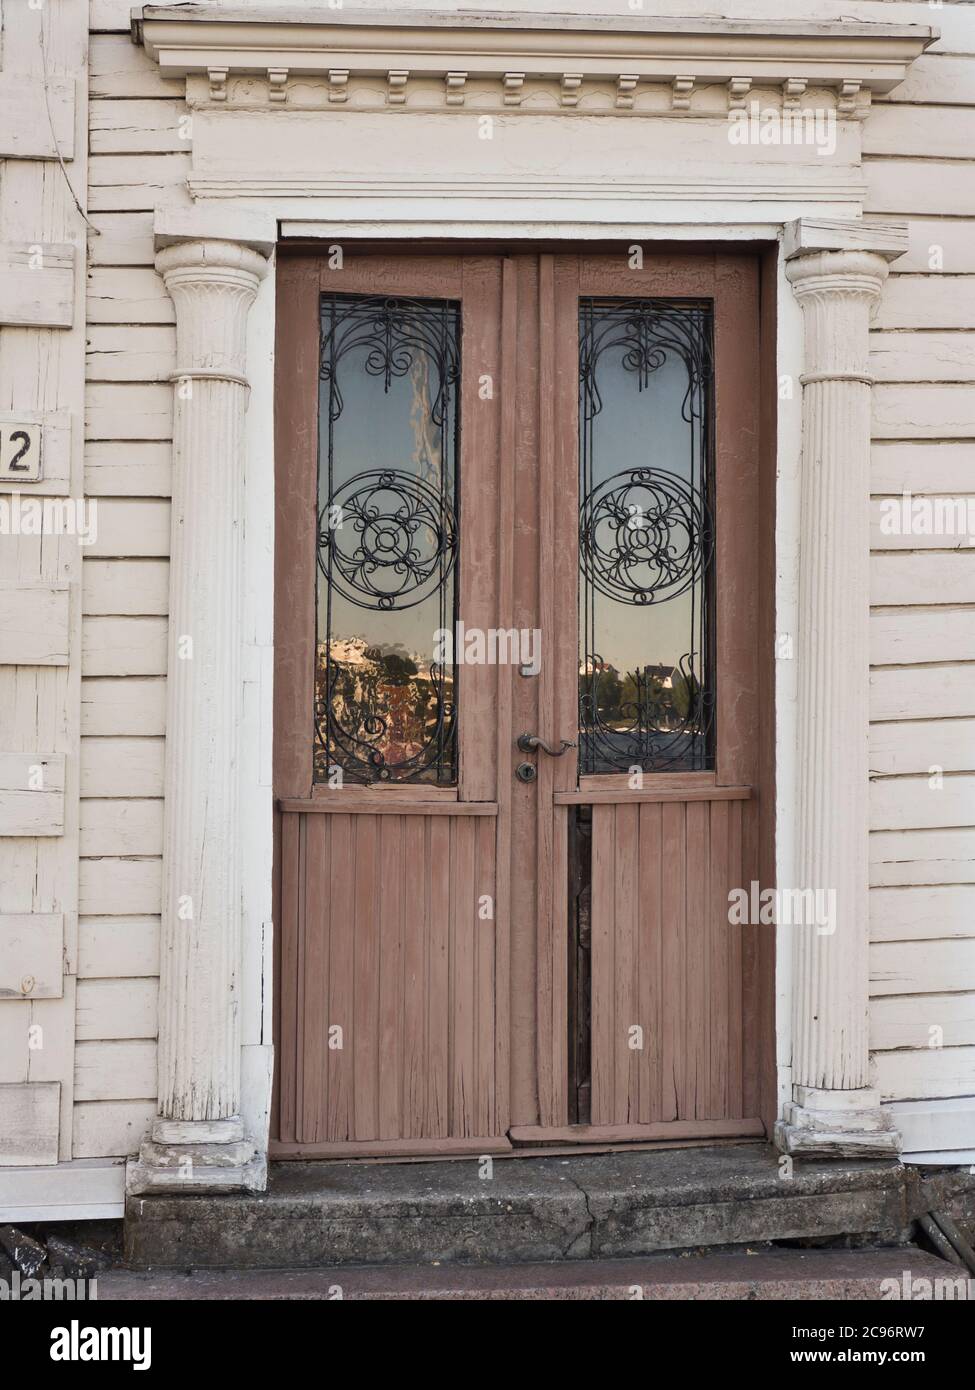 Detalle del edificio, antigua puerta marrón gastada con decoración art nouveau y columnas, número 2, en el puerto de Arendal Noruega Foto de stock